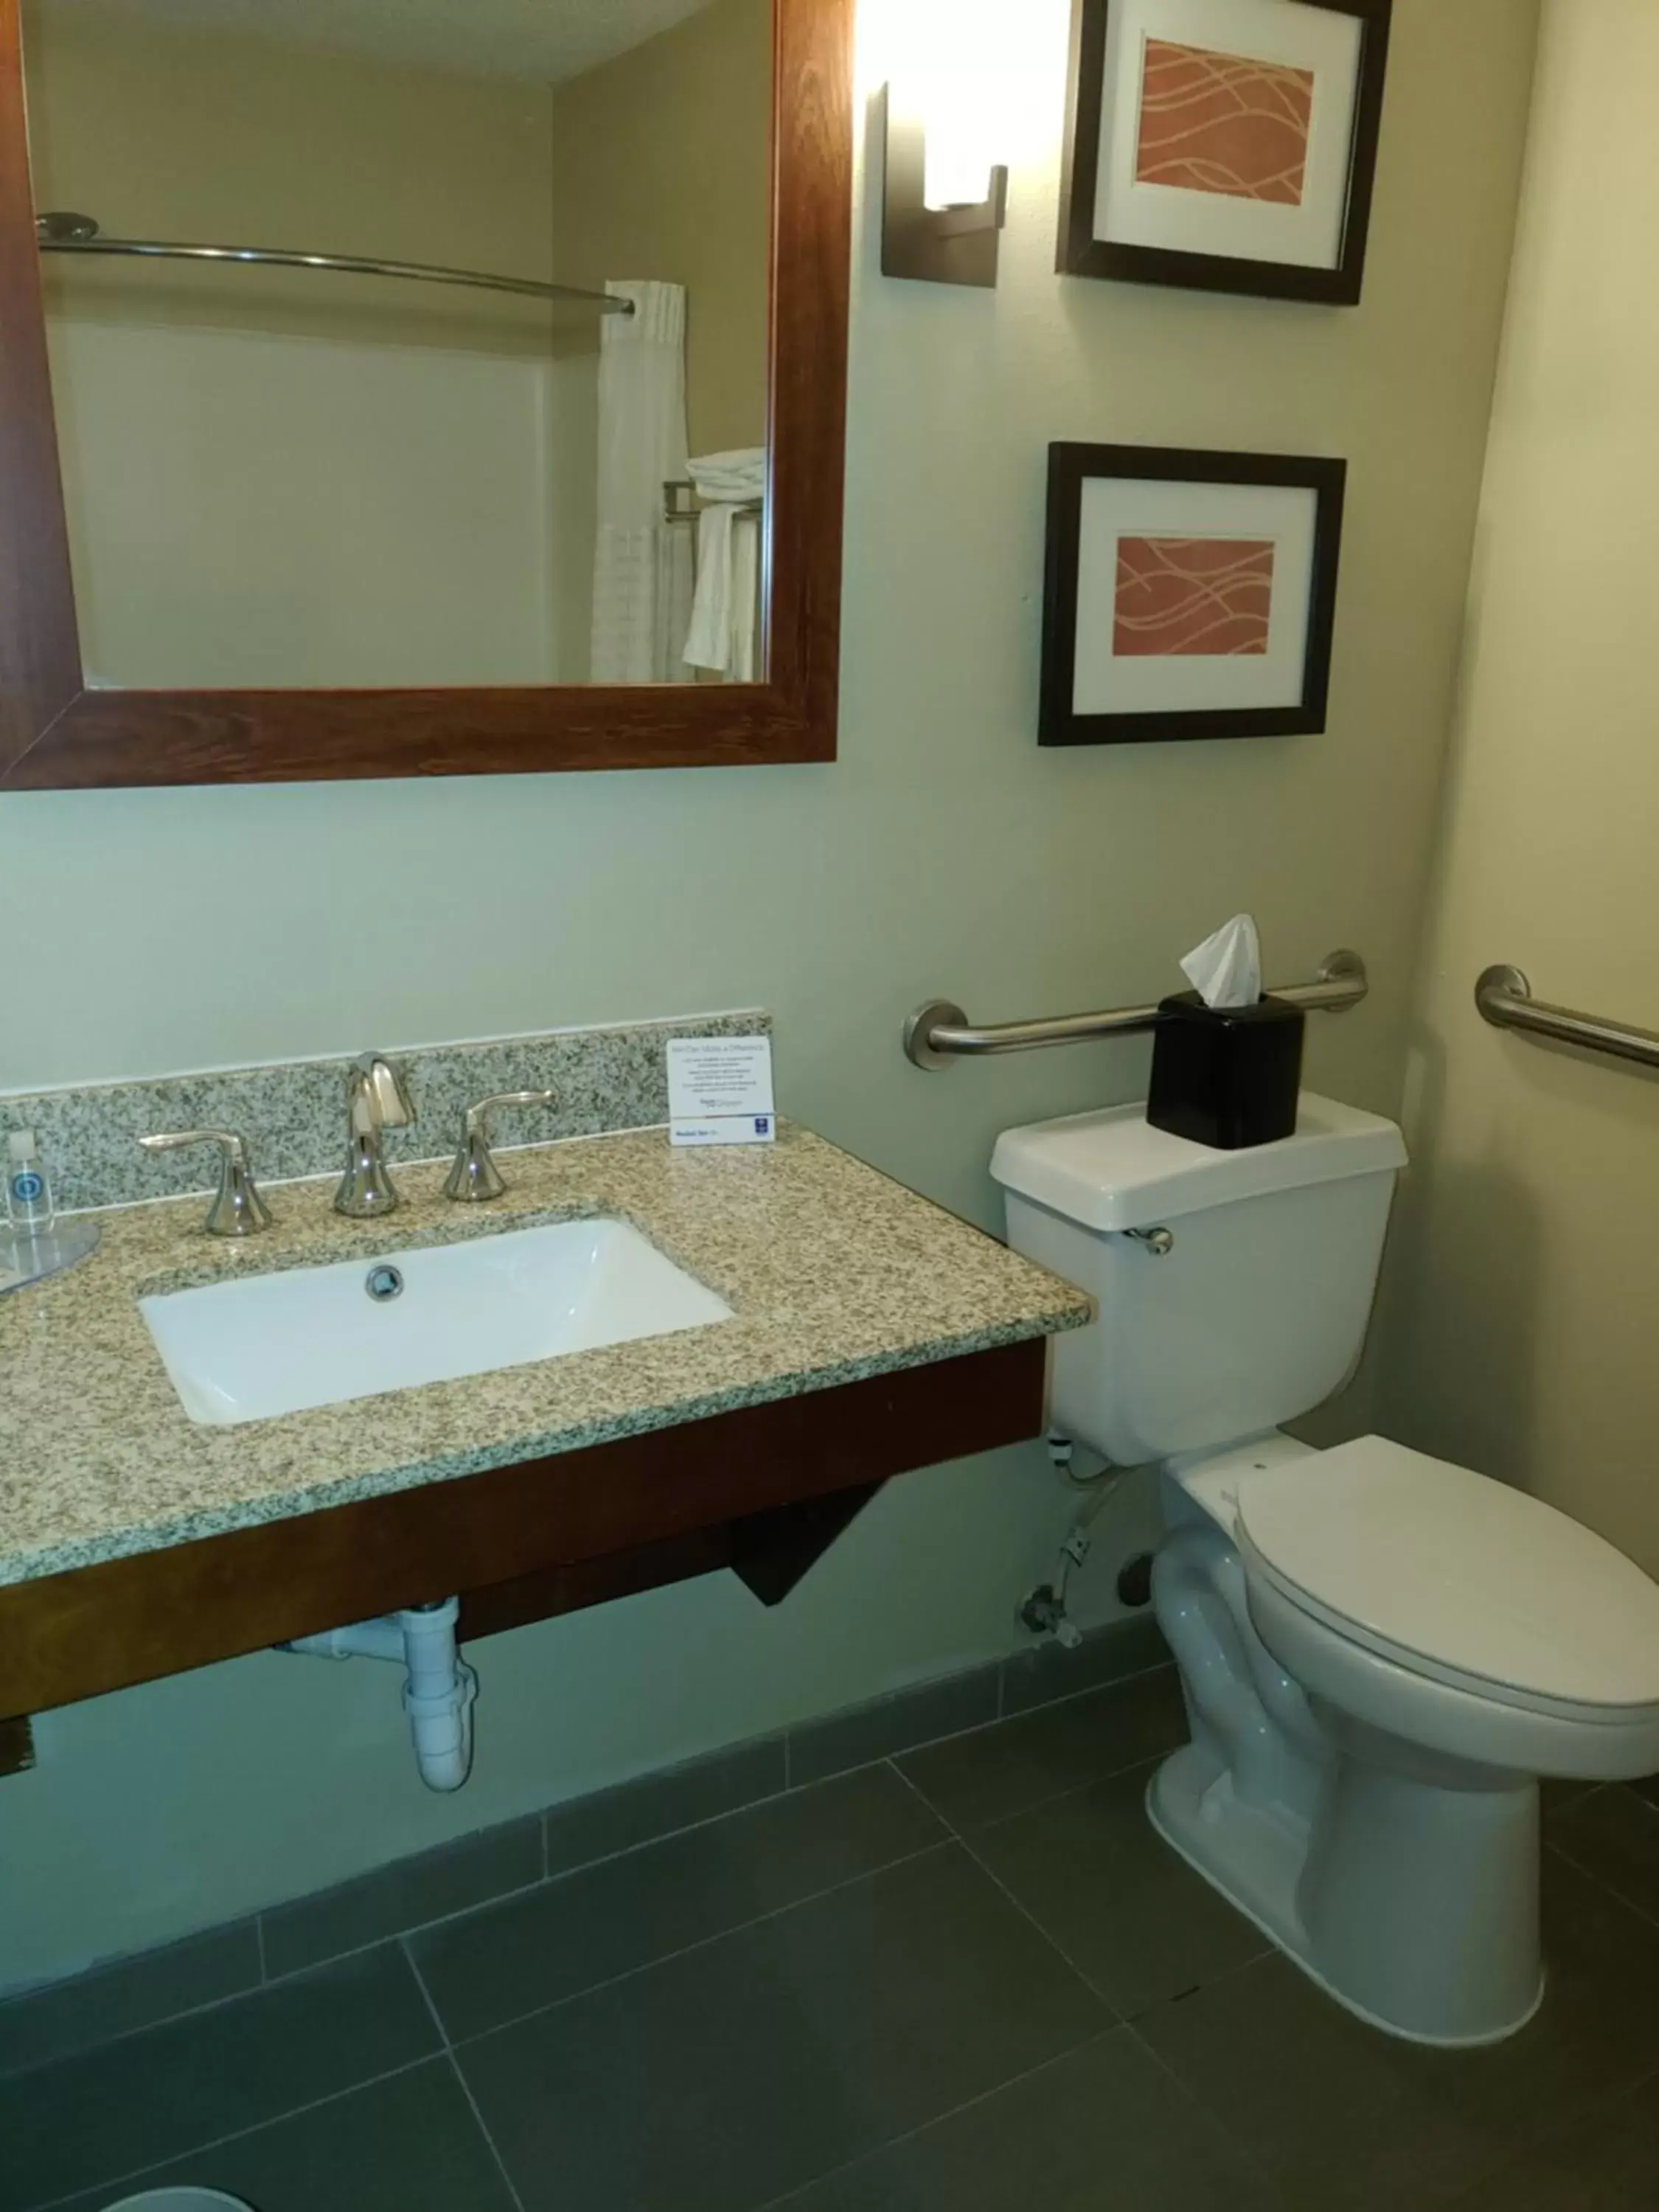 Bathroom in Comfort Inn Idaho Falls